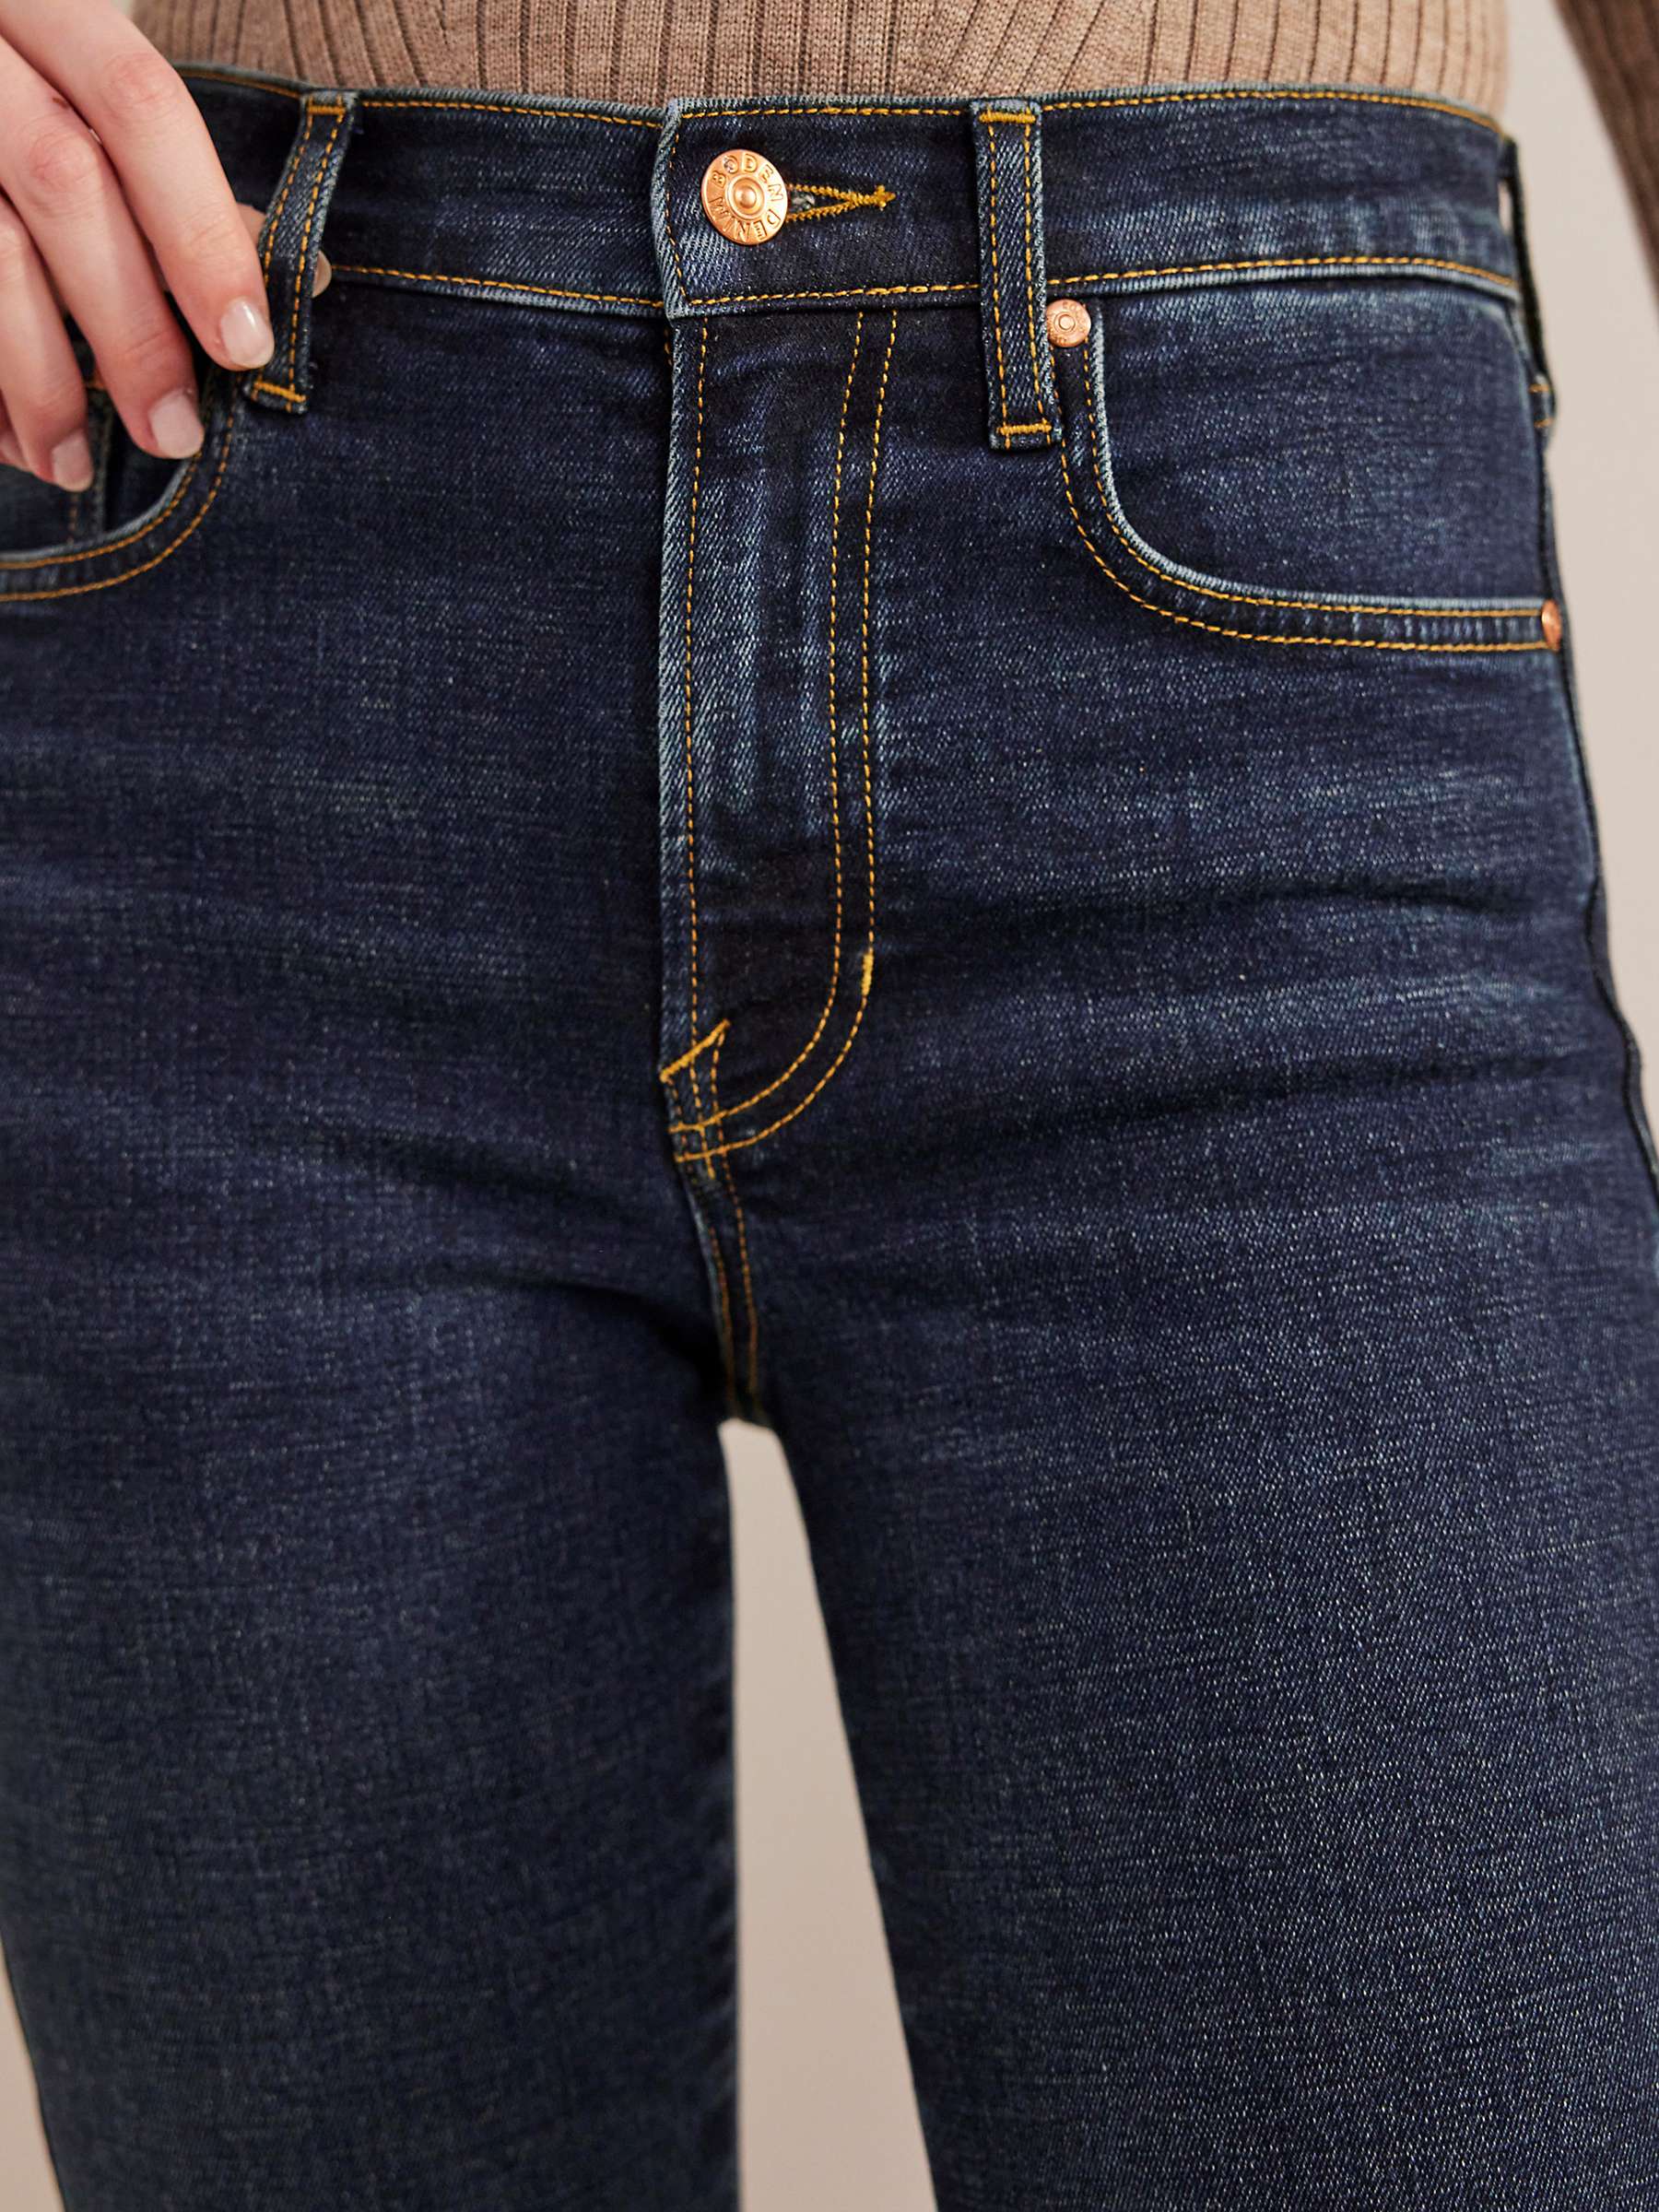 Buy Boden Mid Rise Slim Fit Cigarette Jeans, Indigo Wash Online at johnlewis.com